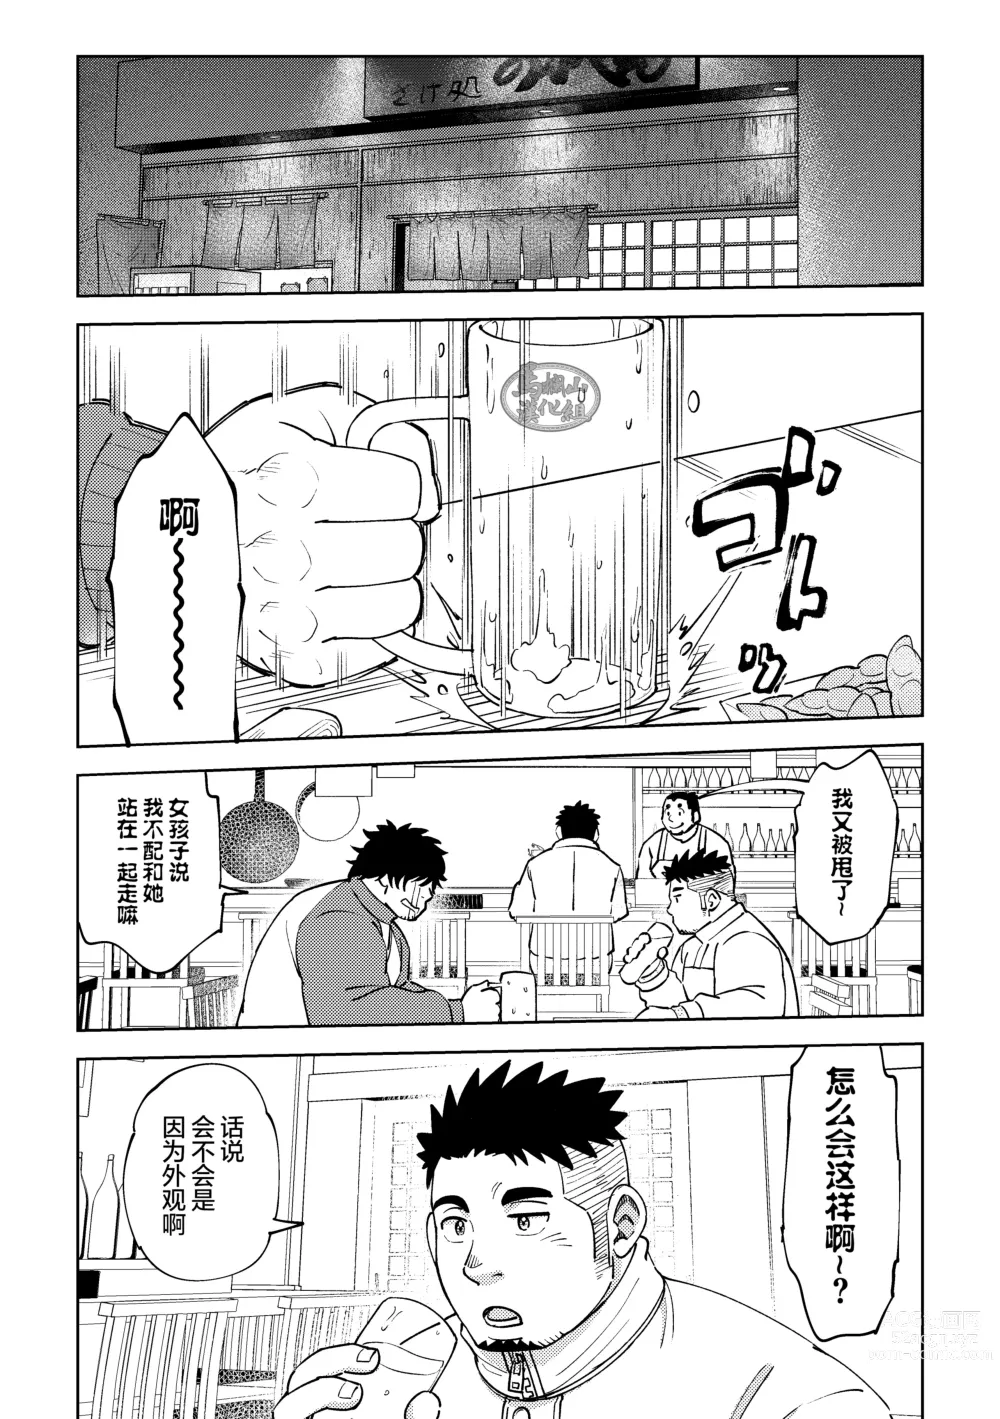 Page 4 of manga 後輩くんは変わりたい